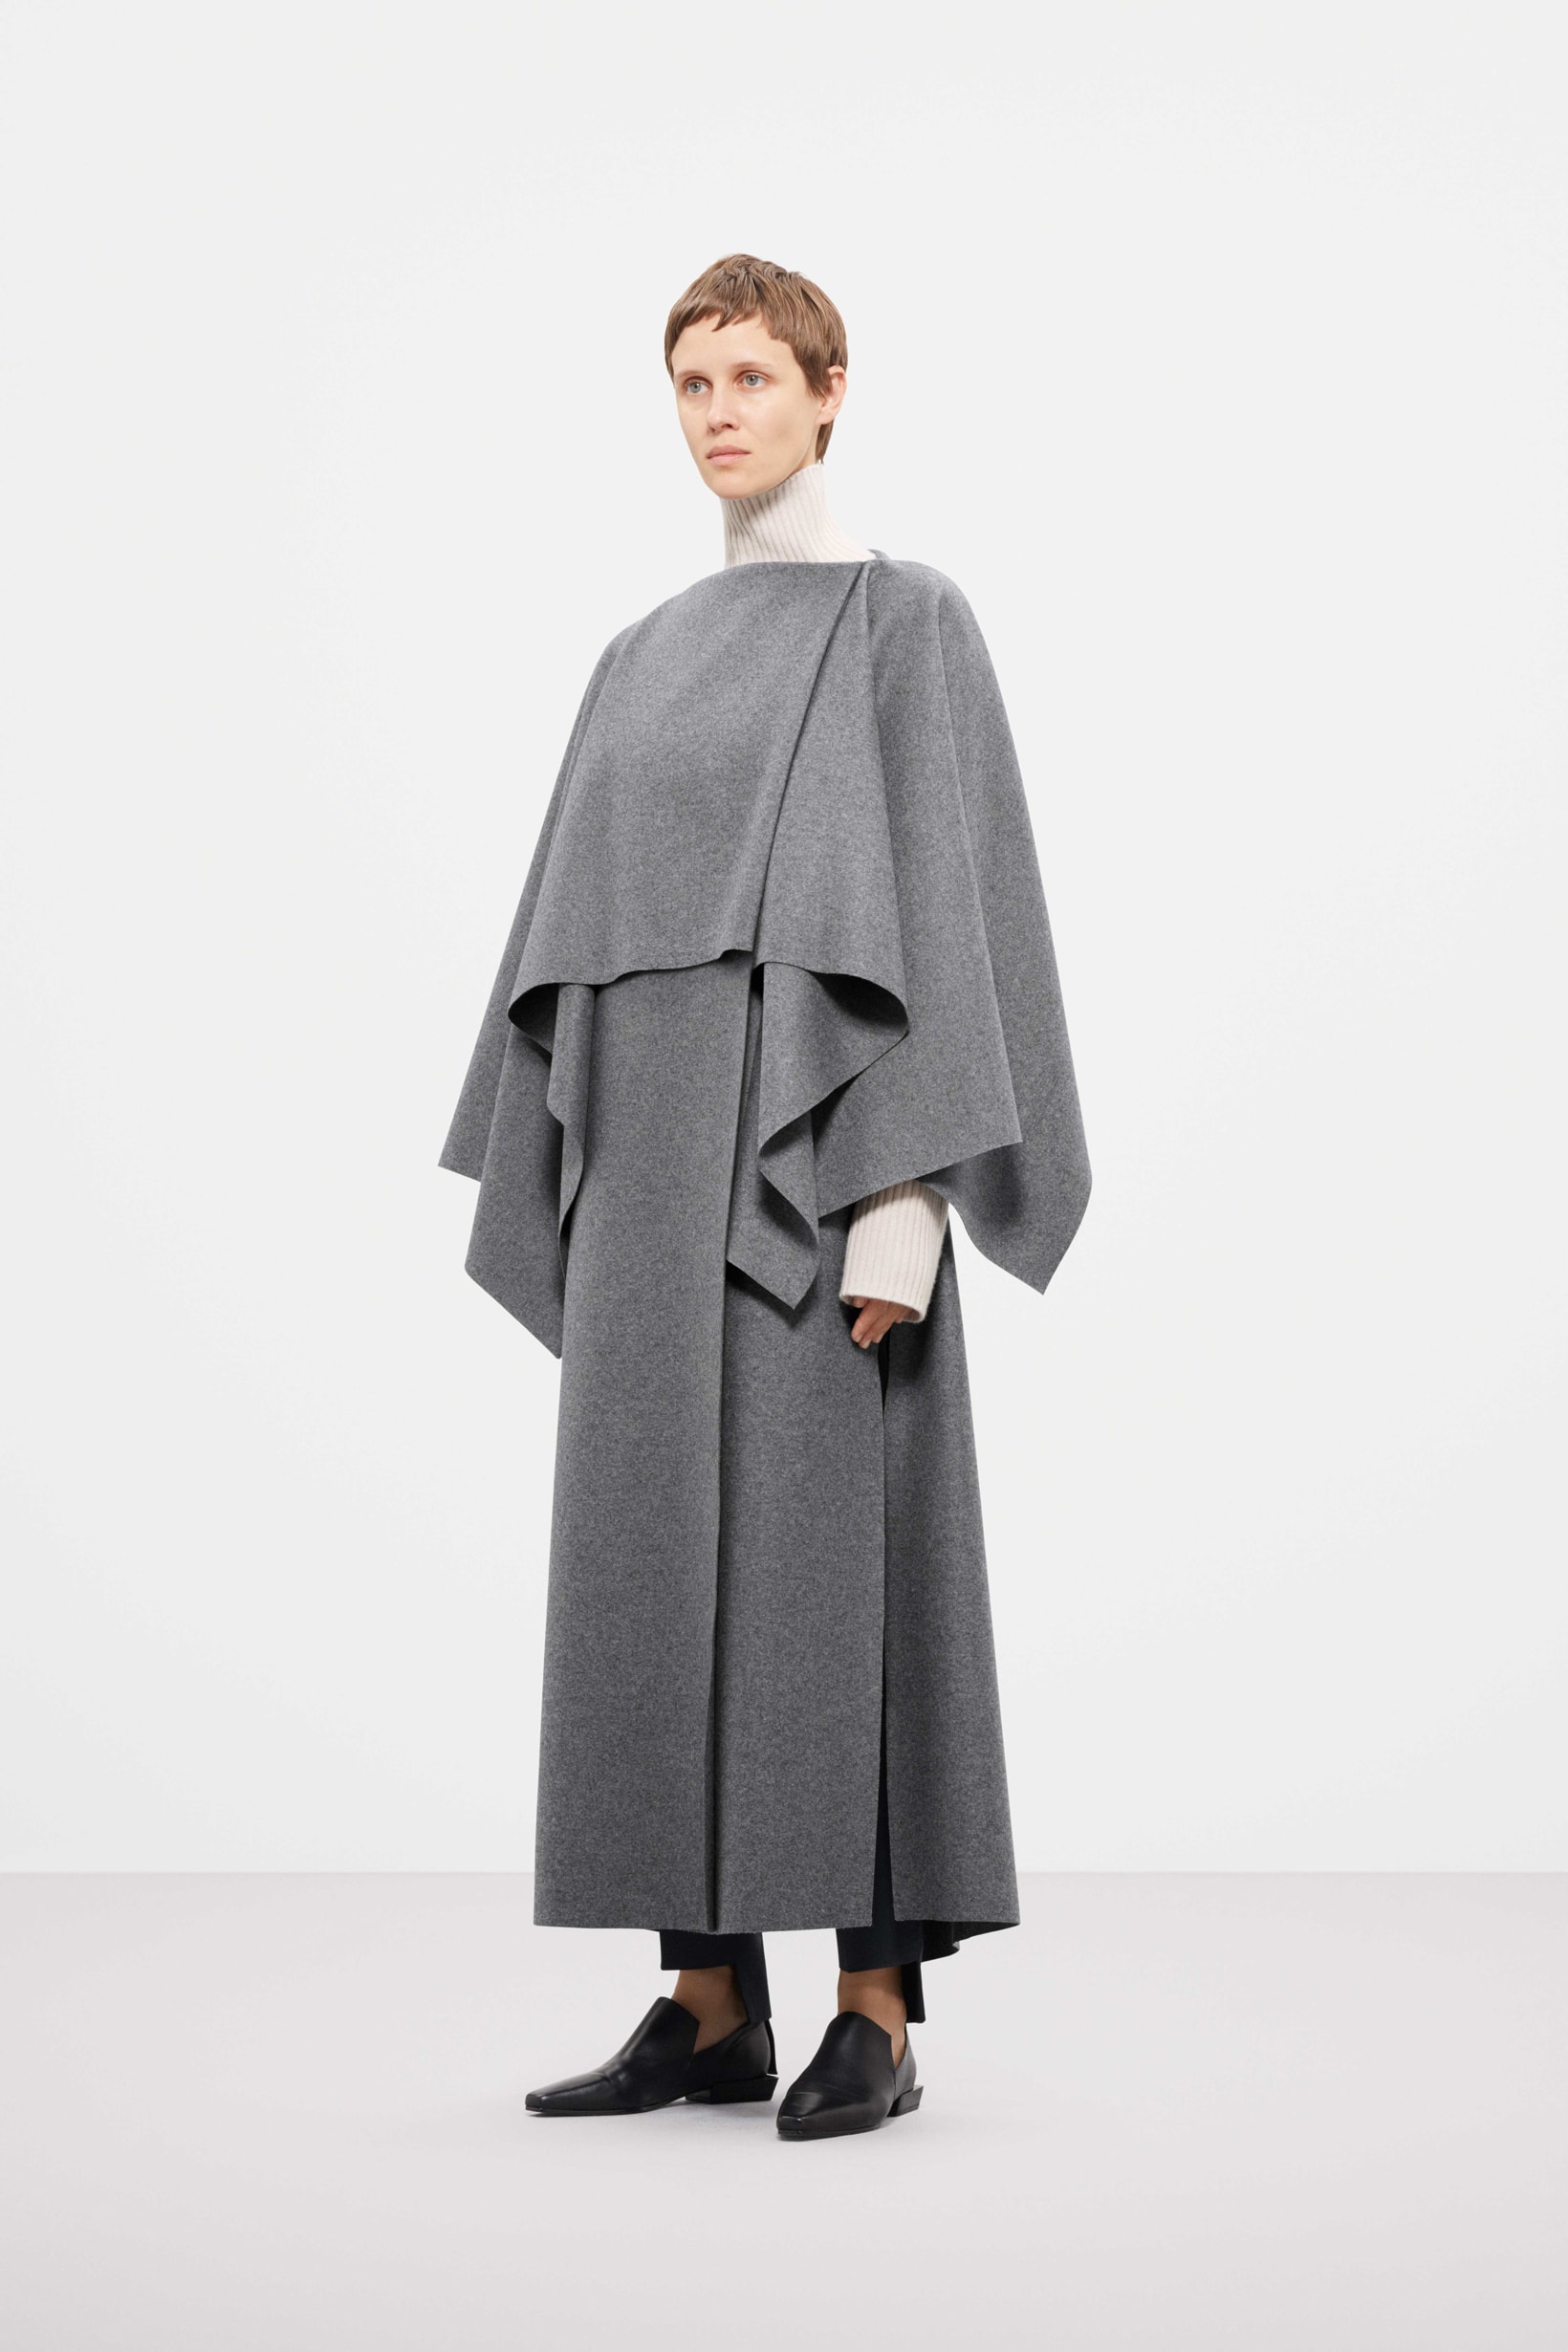 Cos Fall Winter 2019 Lookbook Top Skirt Grey